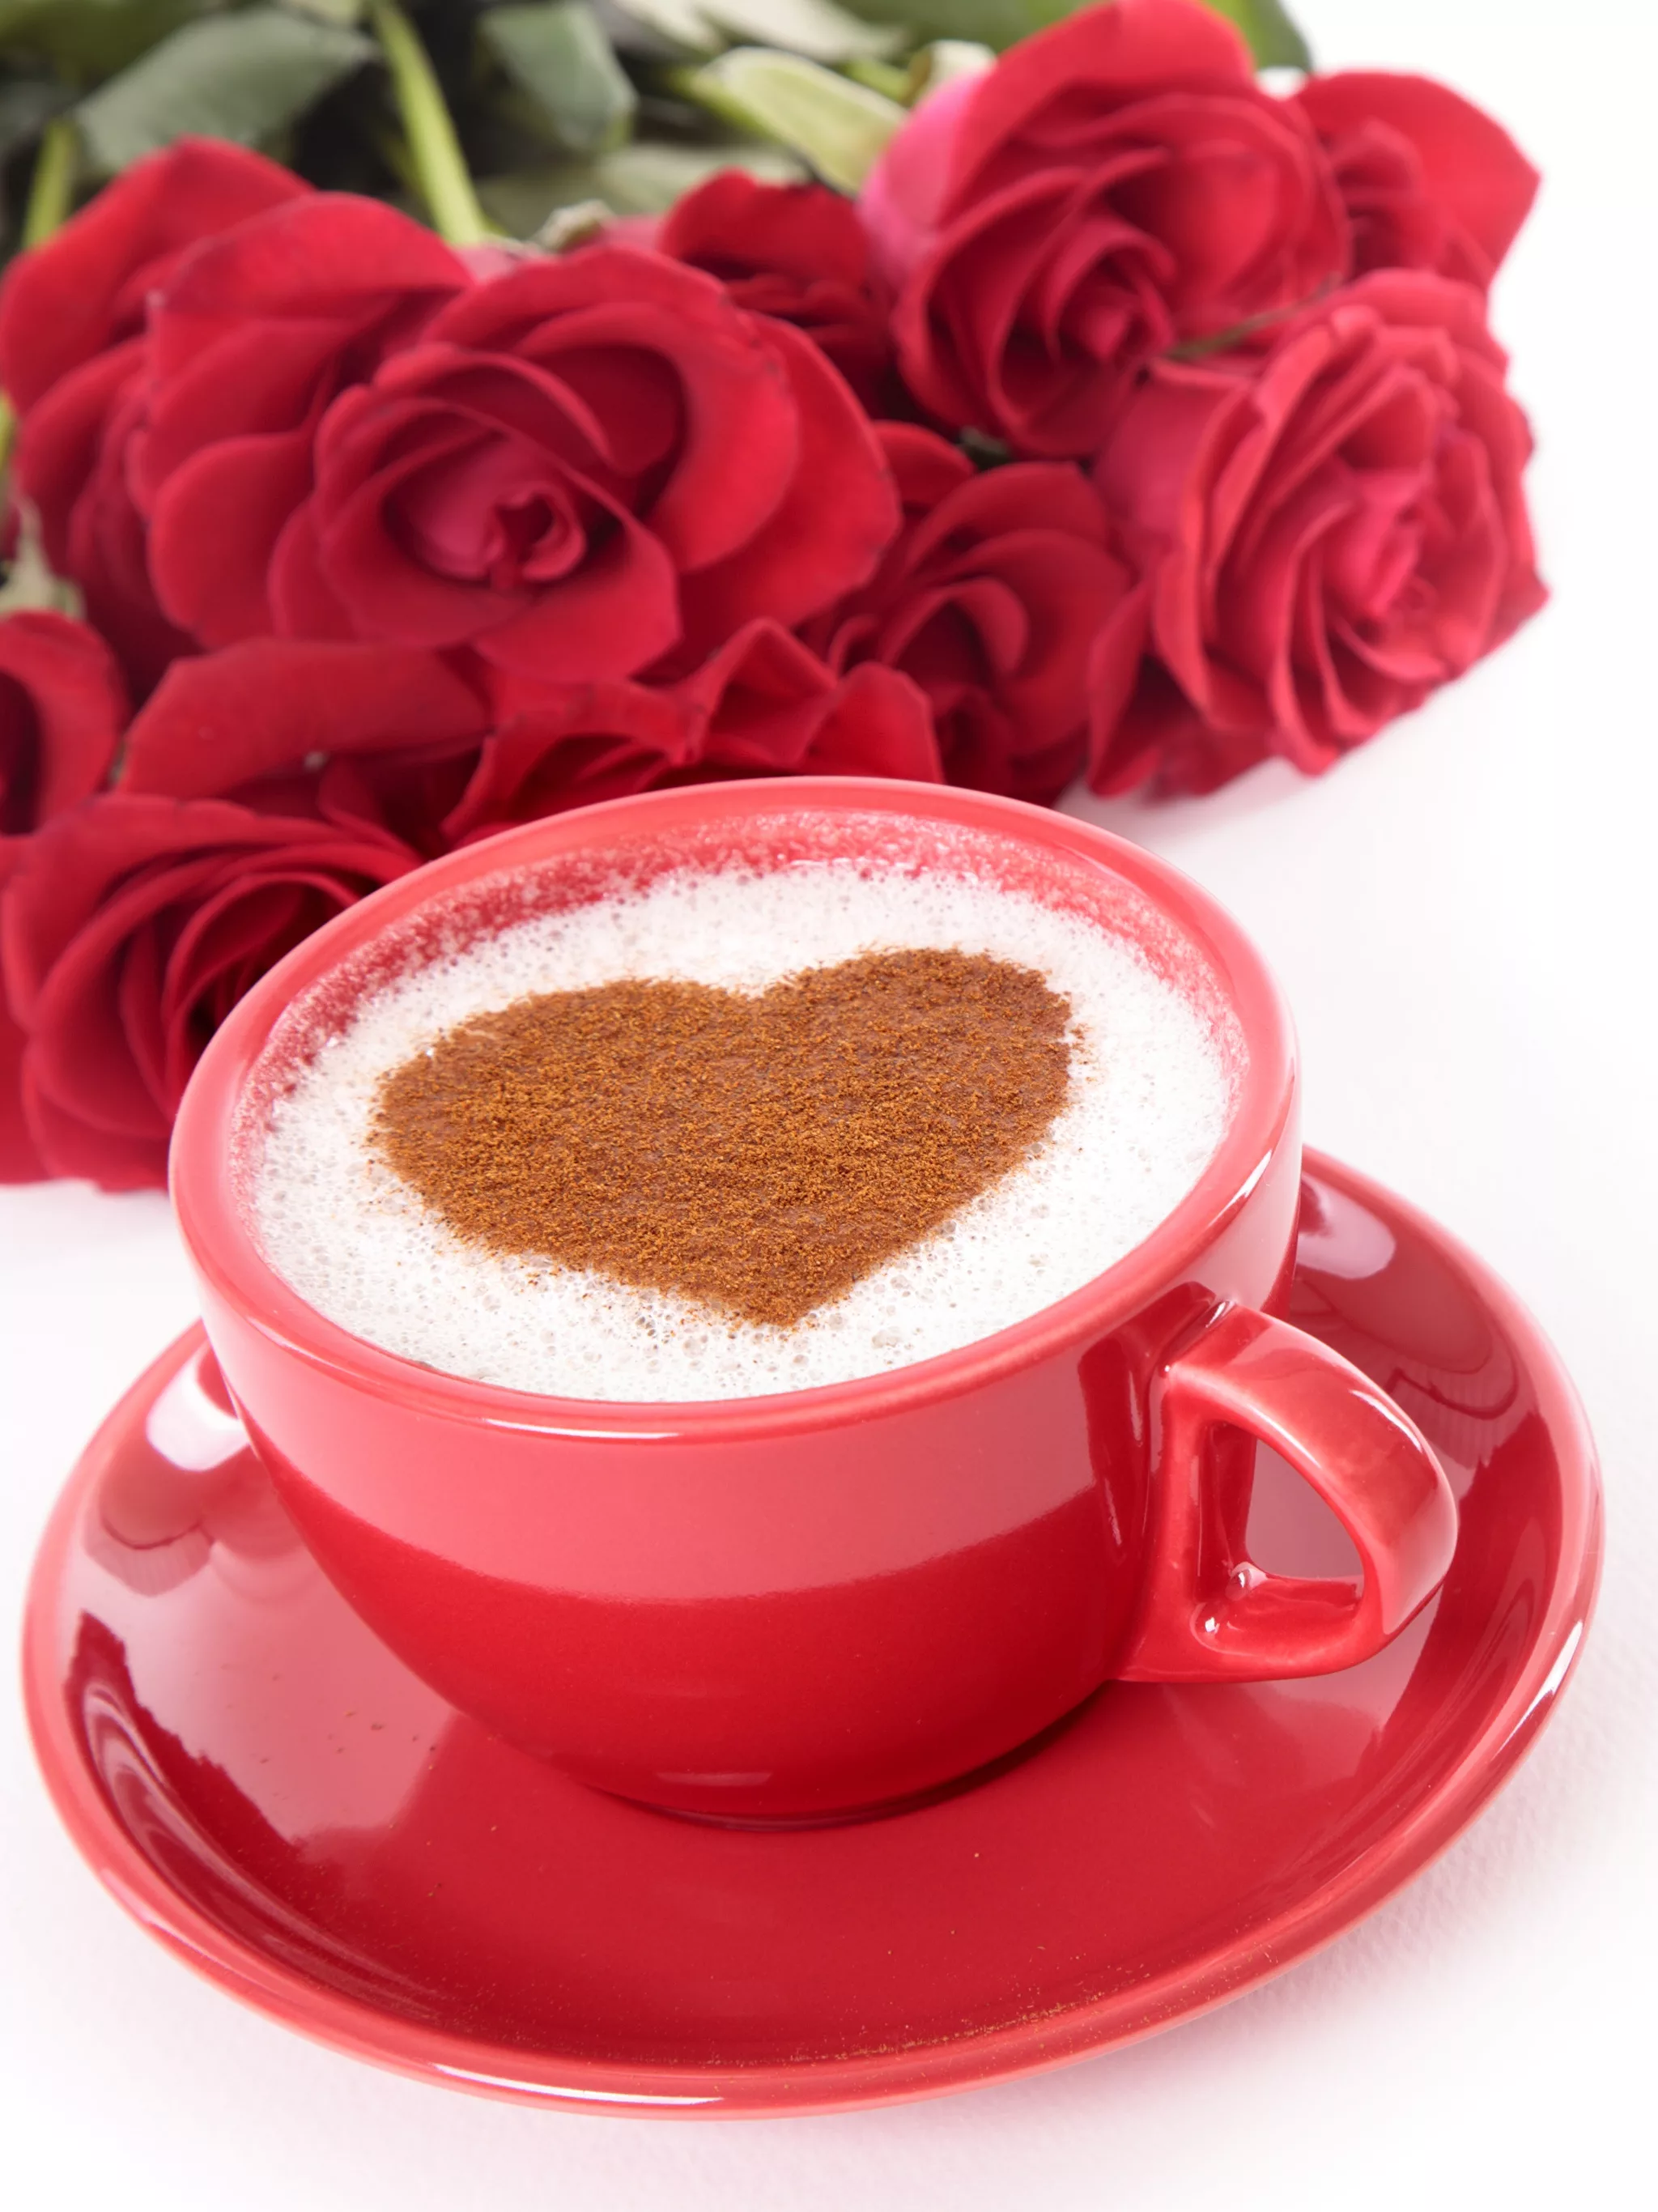 Пожелание доброго утра любимой женщине в картинках. Доброе утро любимая. Пожелания с добрым утром любимой. С бодрящим утром любимая. Чашечка кофе для любимой.